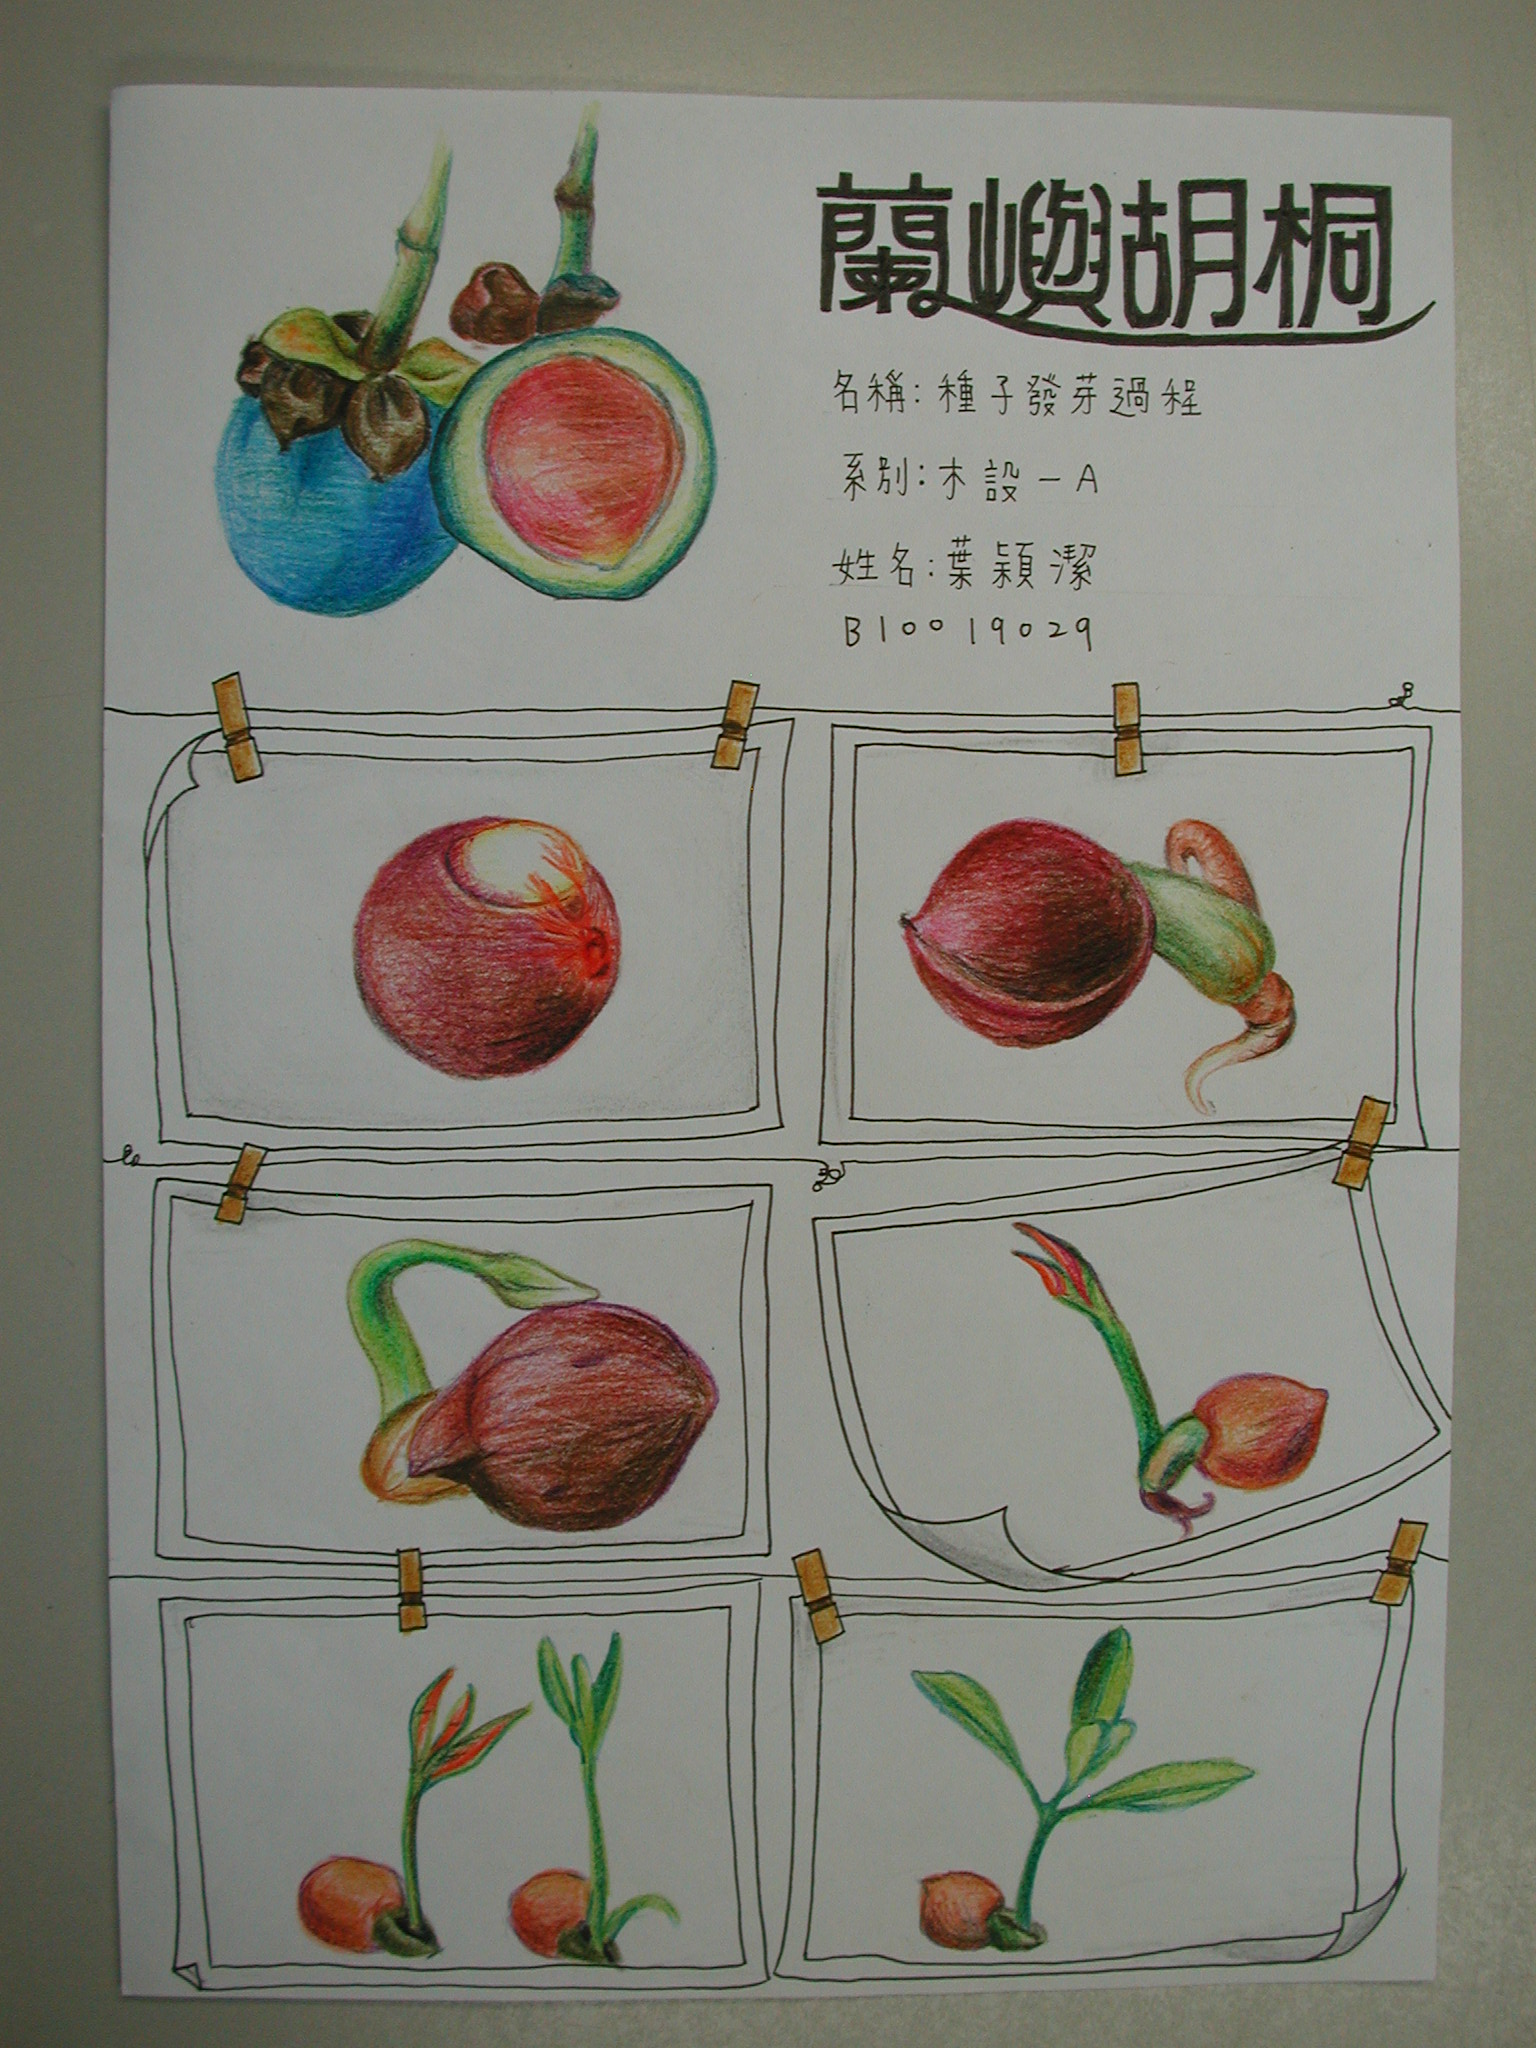 木设一学生手绘植物发芽纪录(1)–从画中学植物